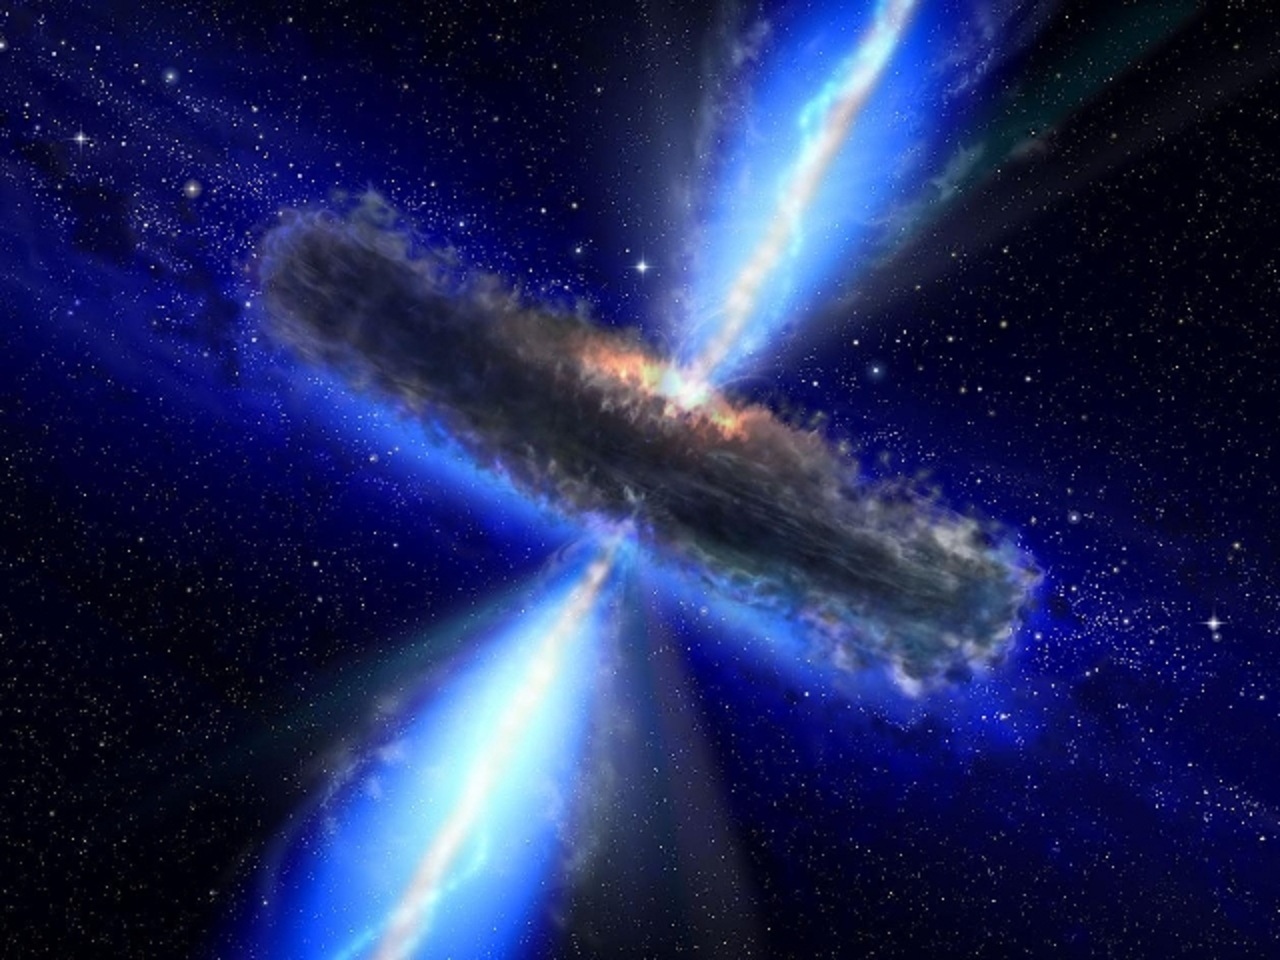 Visión artística de un agujero negro supermasivo, devorando su entorno. Fuente: NASA/ESA.